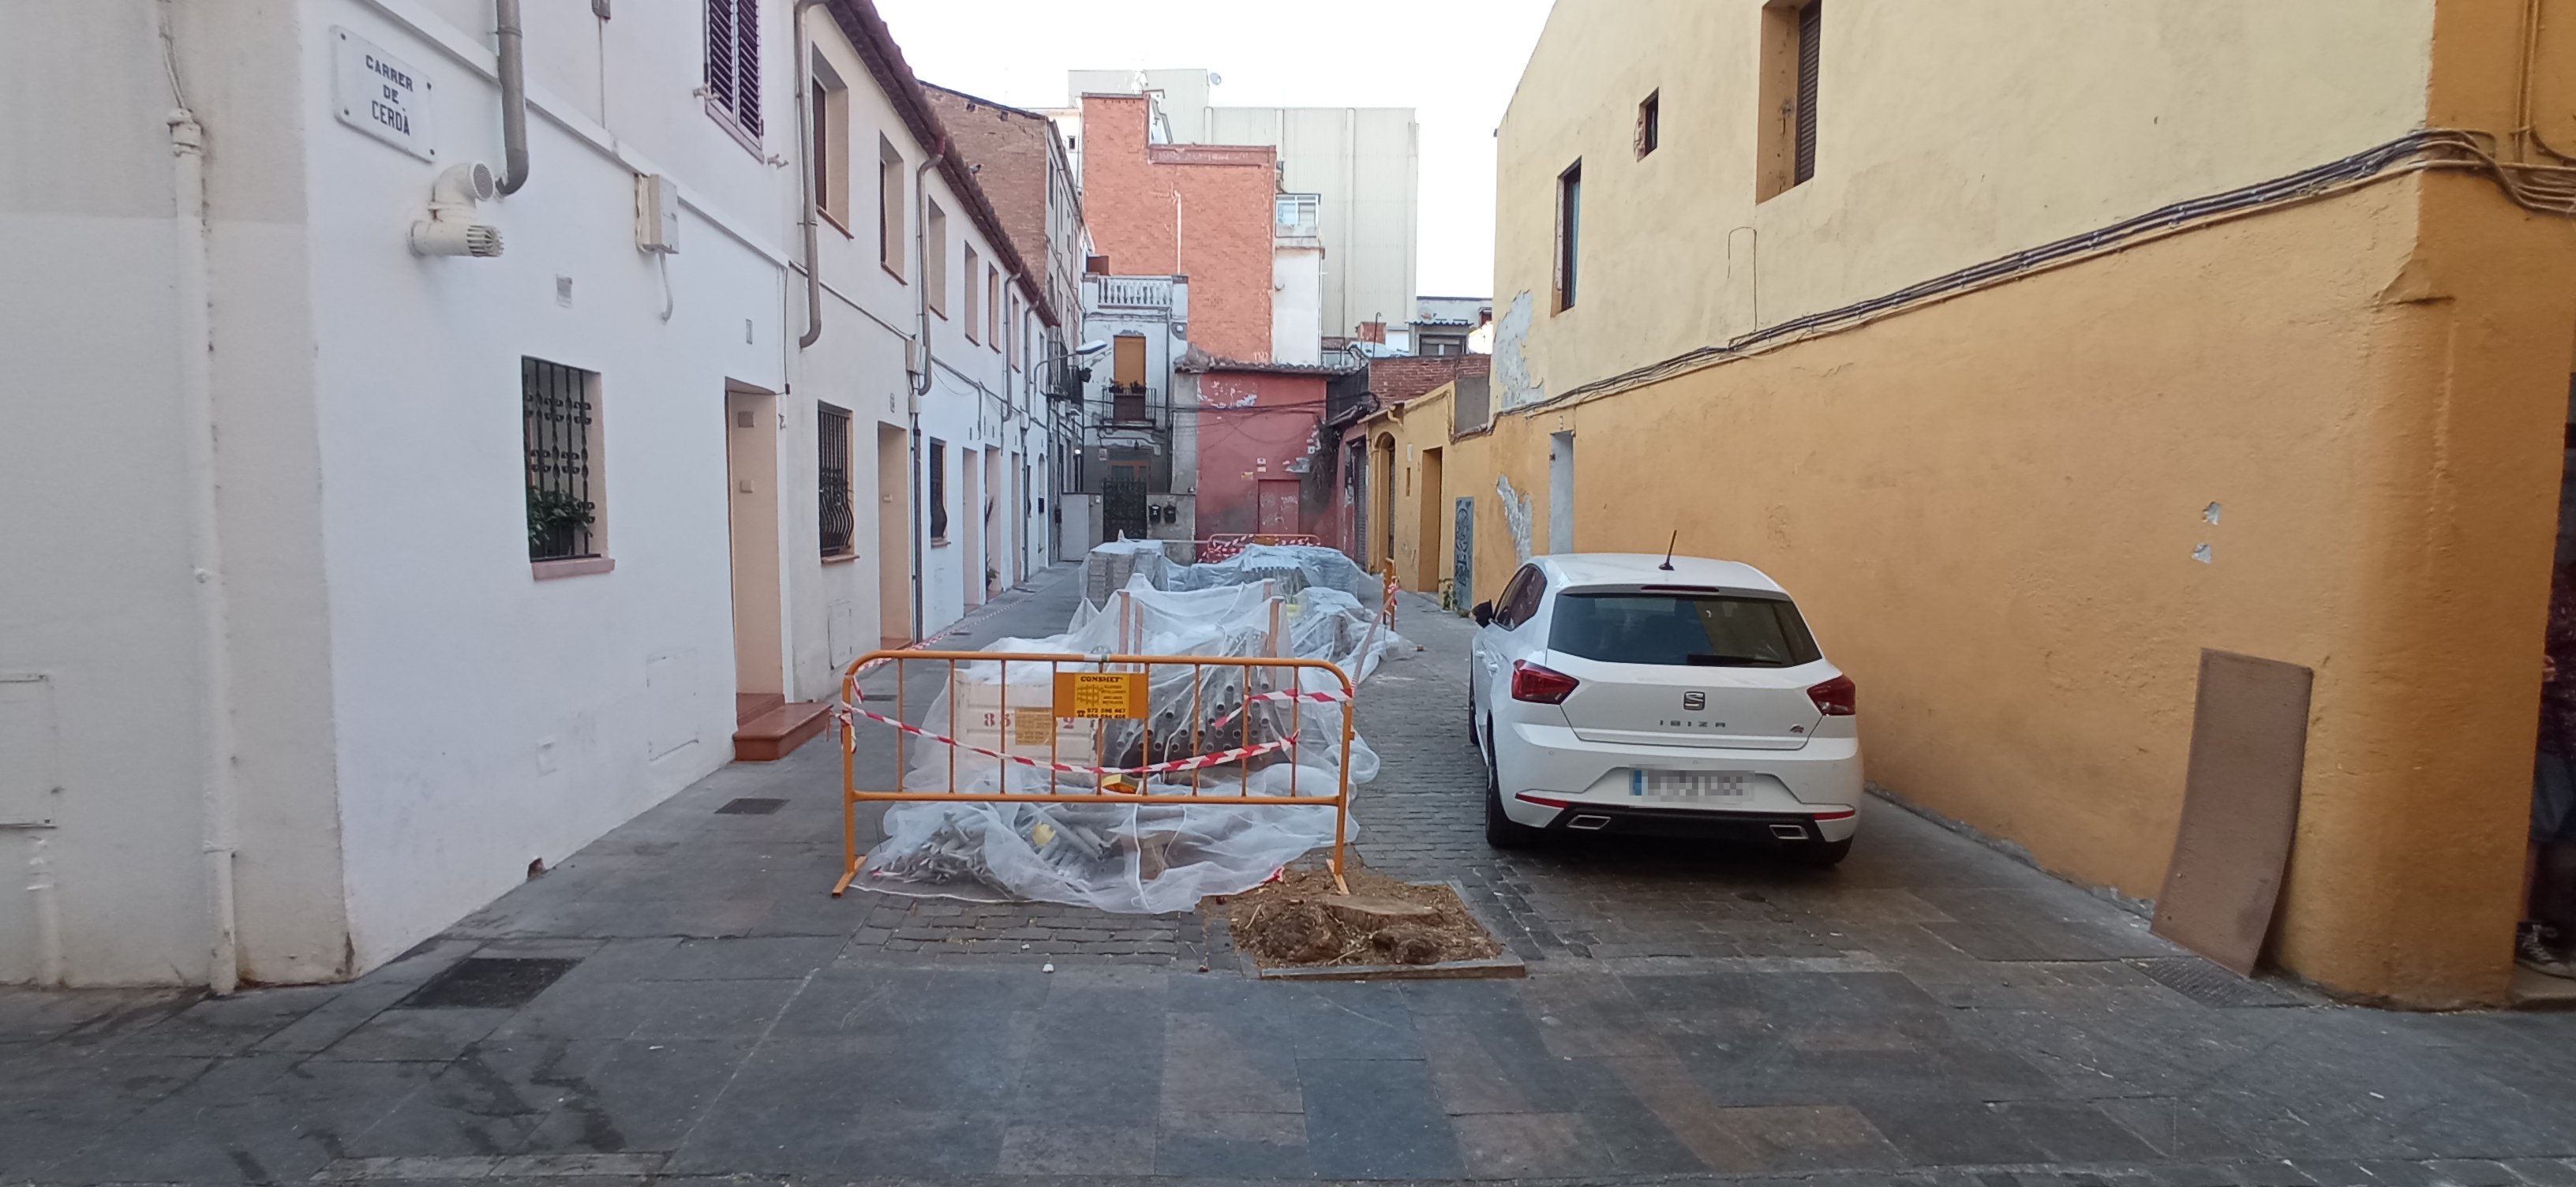 Hechos consumados: las obras en la calle deforestada por Colau ya están en marcha